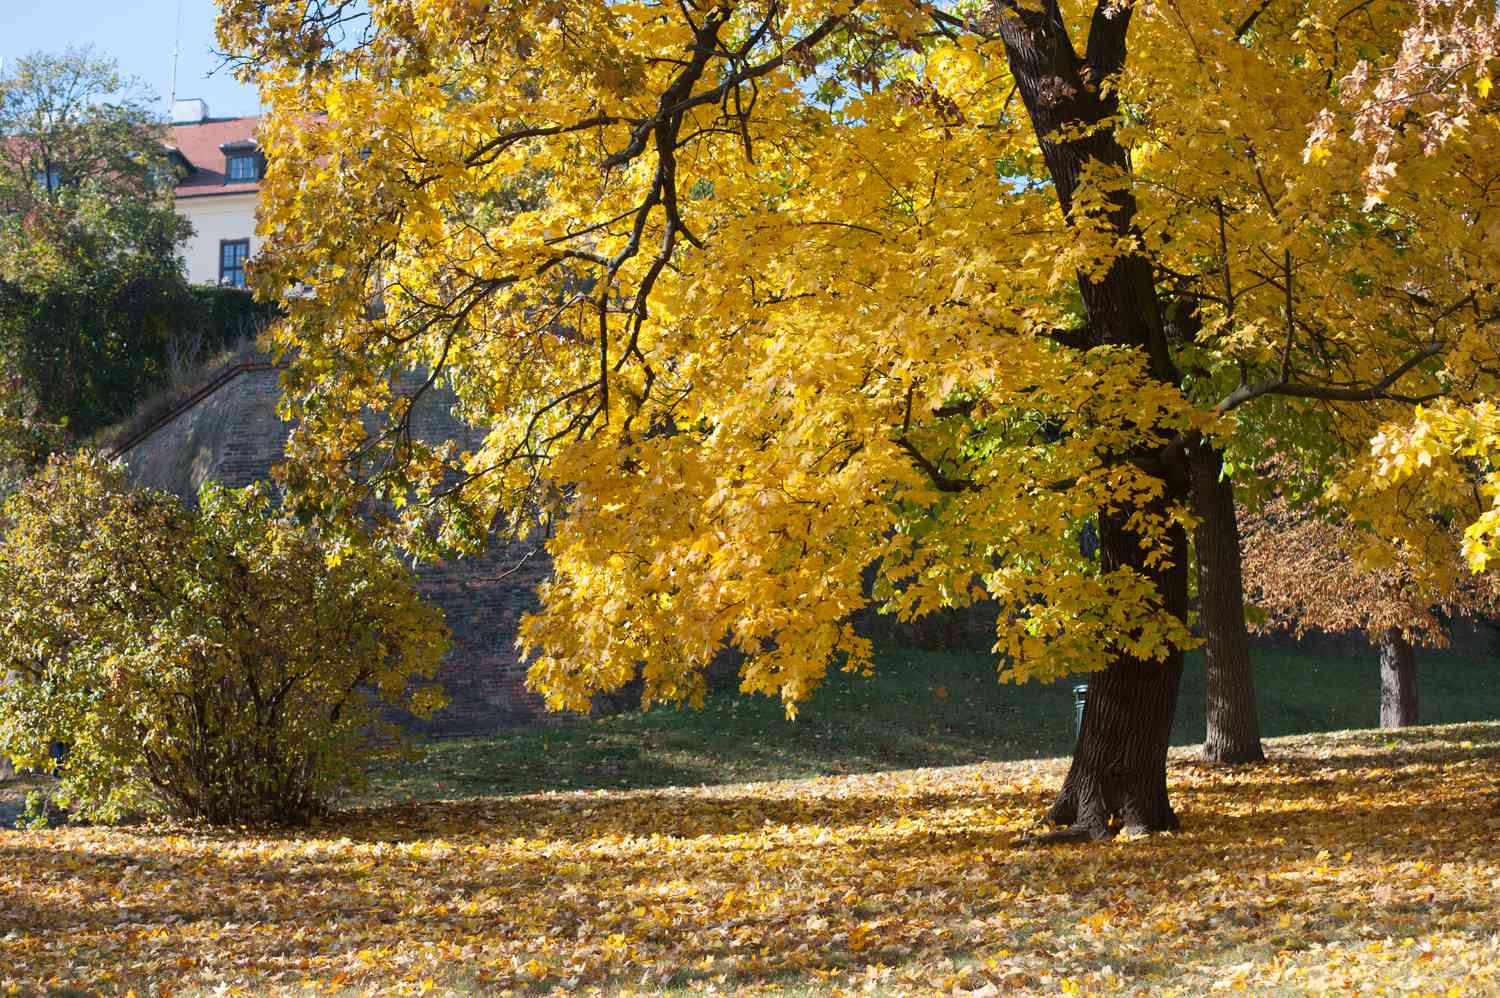 Spitzahorn mit gelben Blättern inmitten eines Parks mit gefallenen Blättern